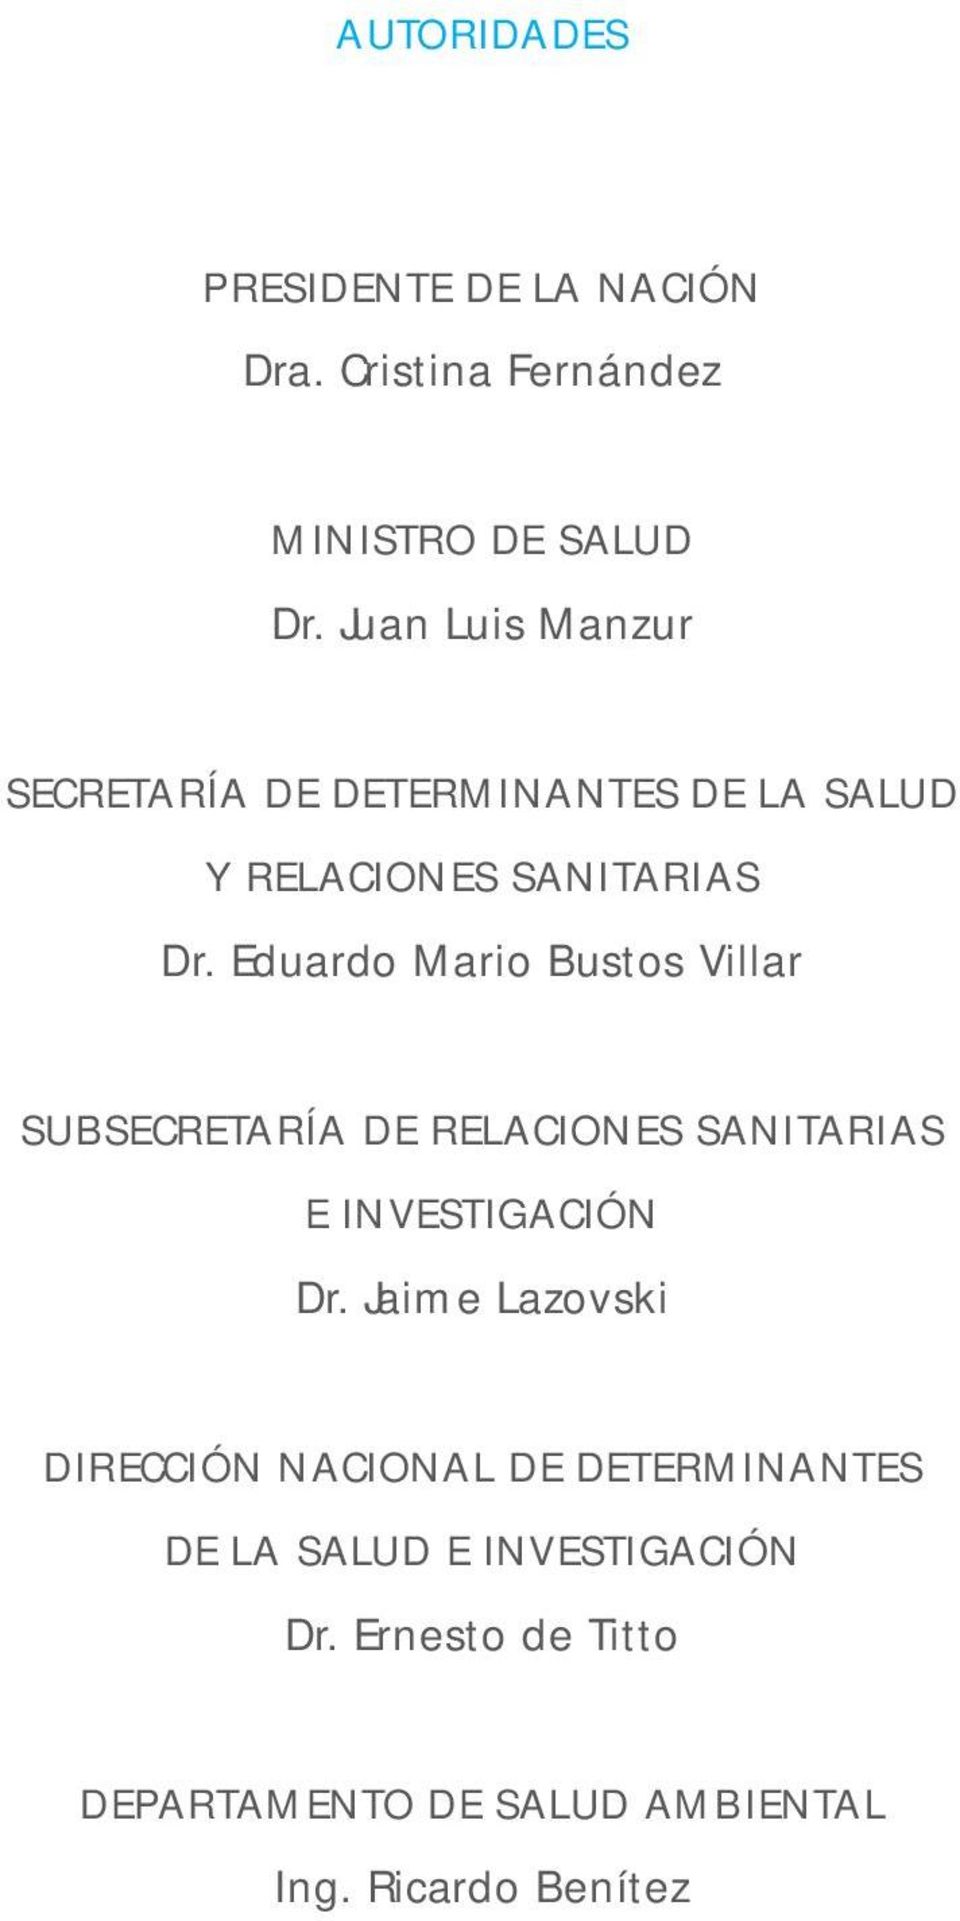 Eduardo Mario Bustos Villar SUBSECRETARÍA DE RELACIONES SANITARIAS E INVESTIGACIÓN Dr.